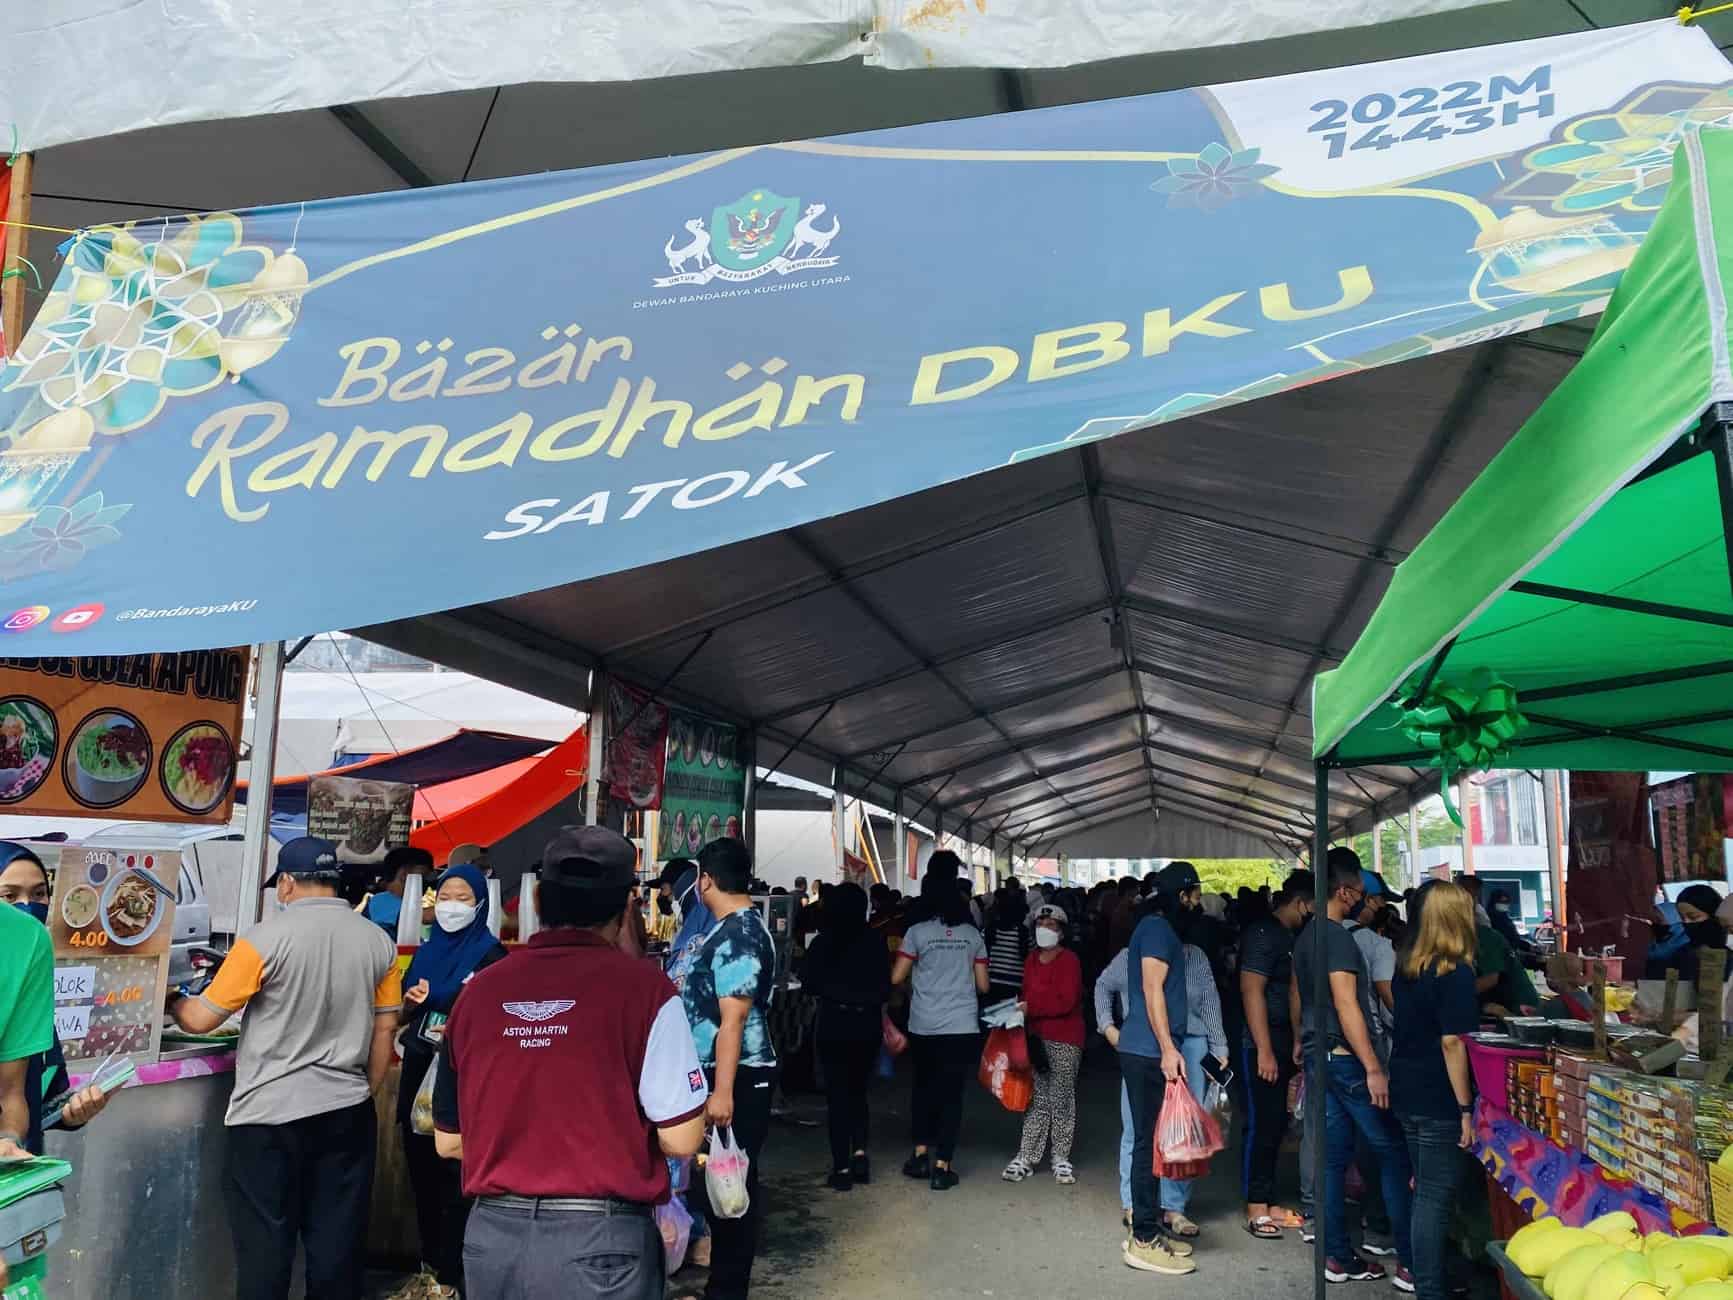 Bazaar Ramadhan Satok, Kuching